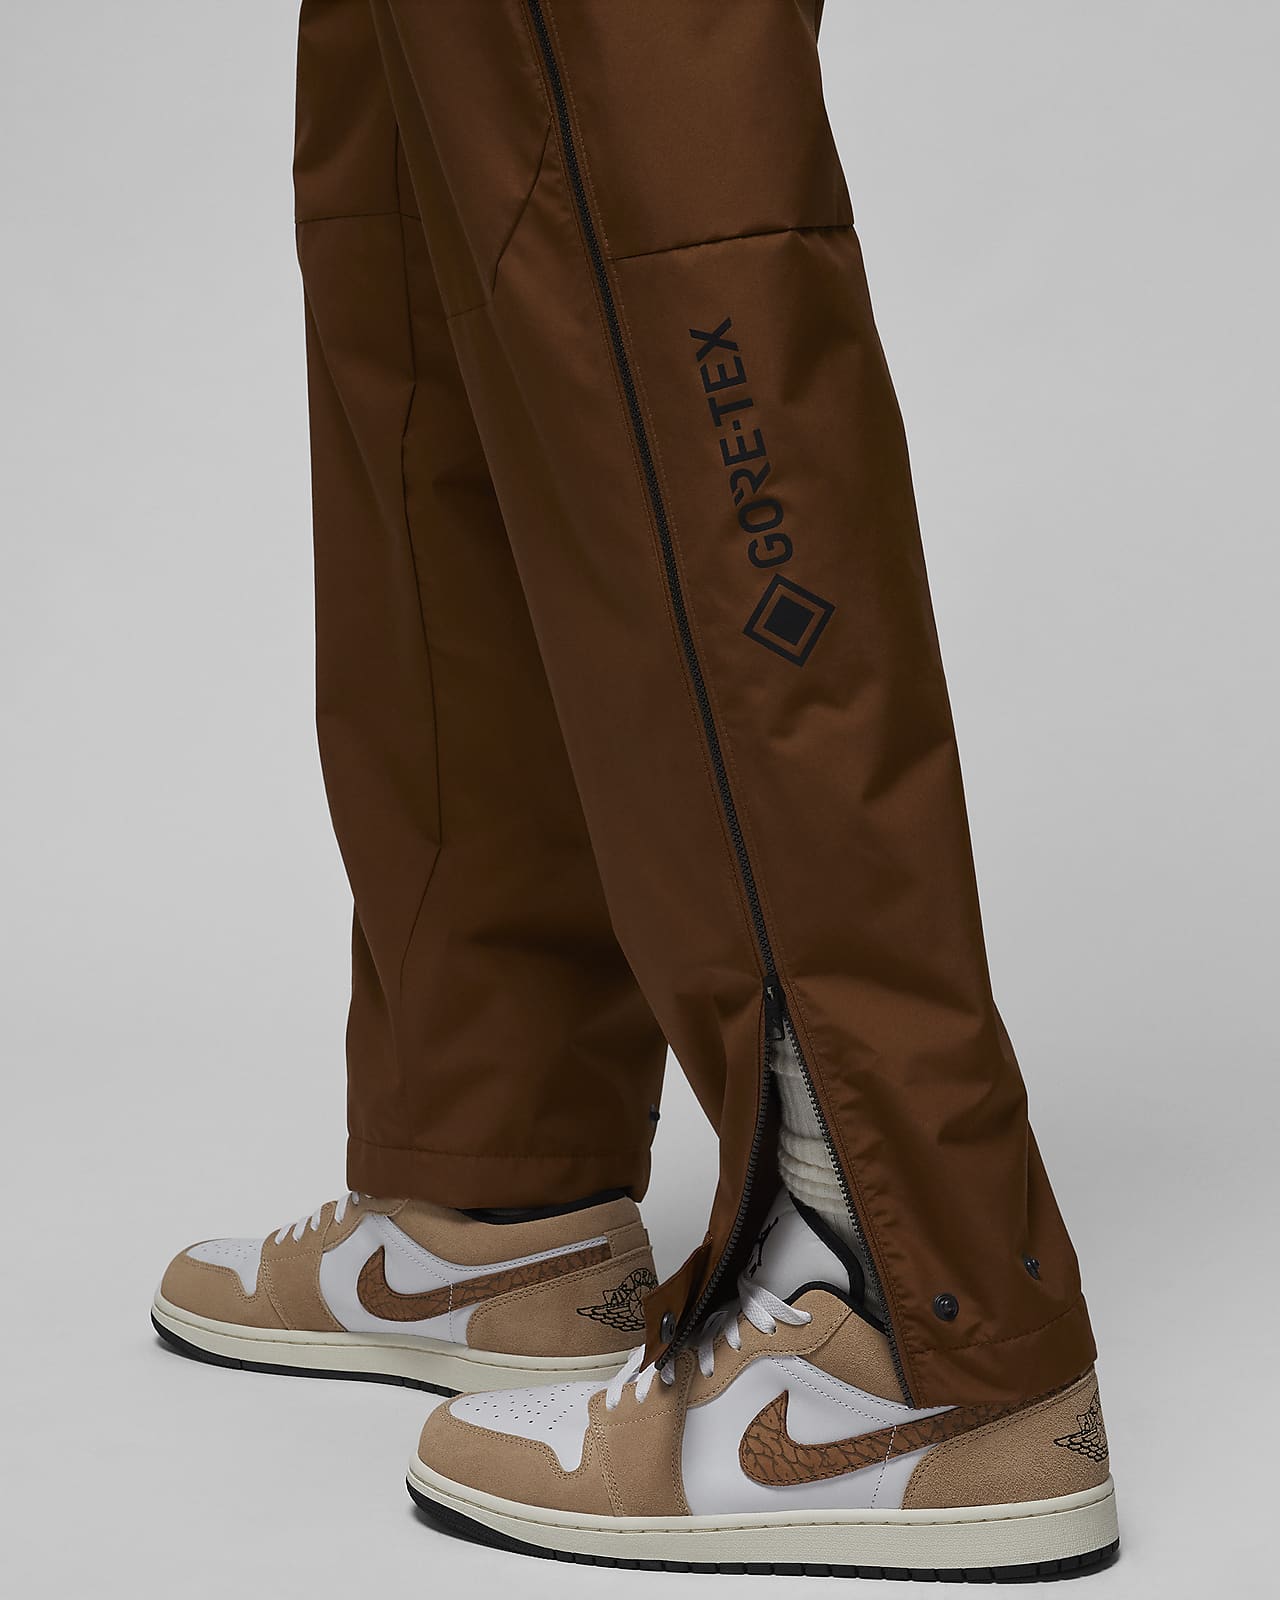 Jordan Flight Heritage Men's Woven Pants, Off Noir, X-Large : :  Clothing, Shoes & Accessories